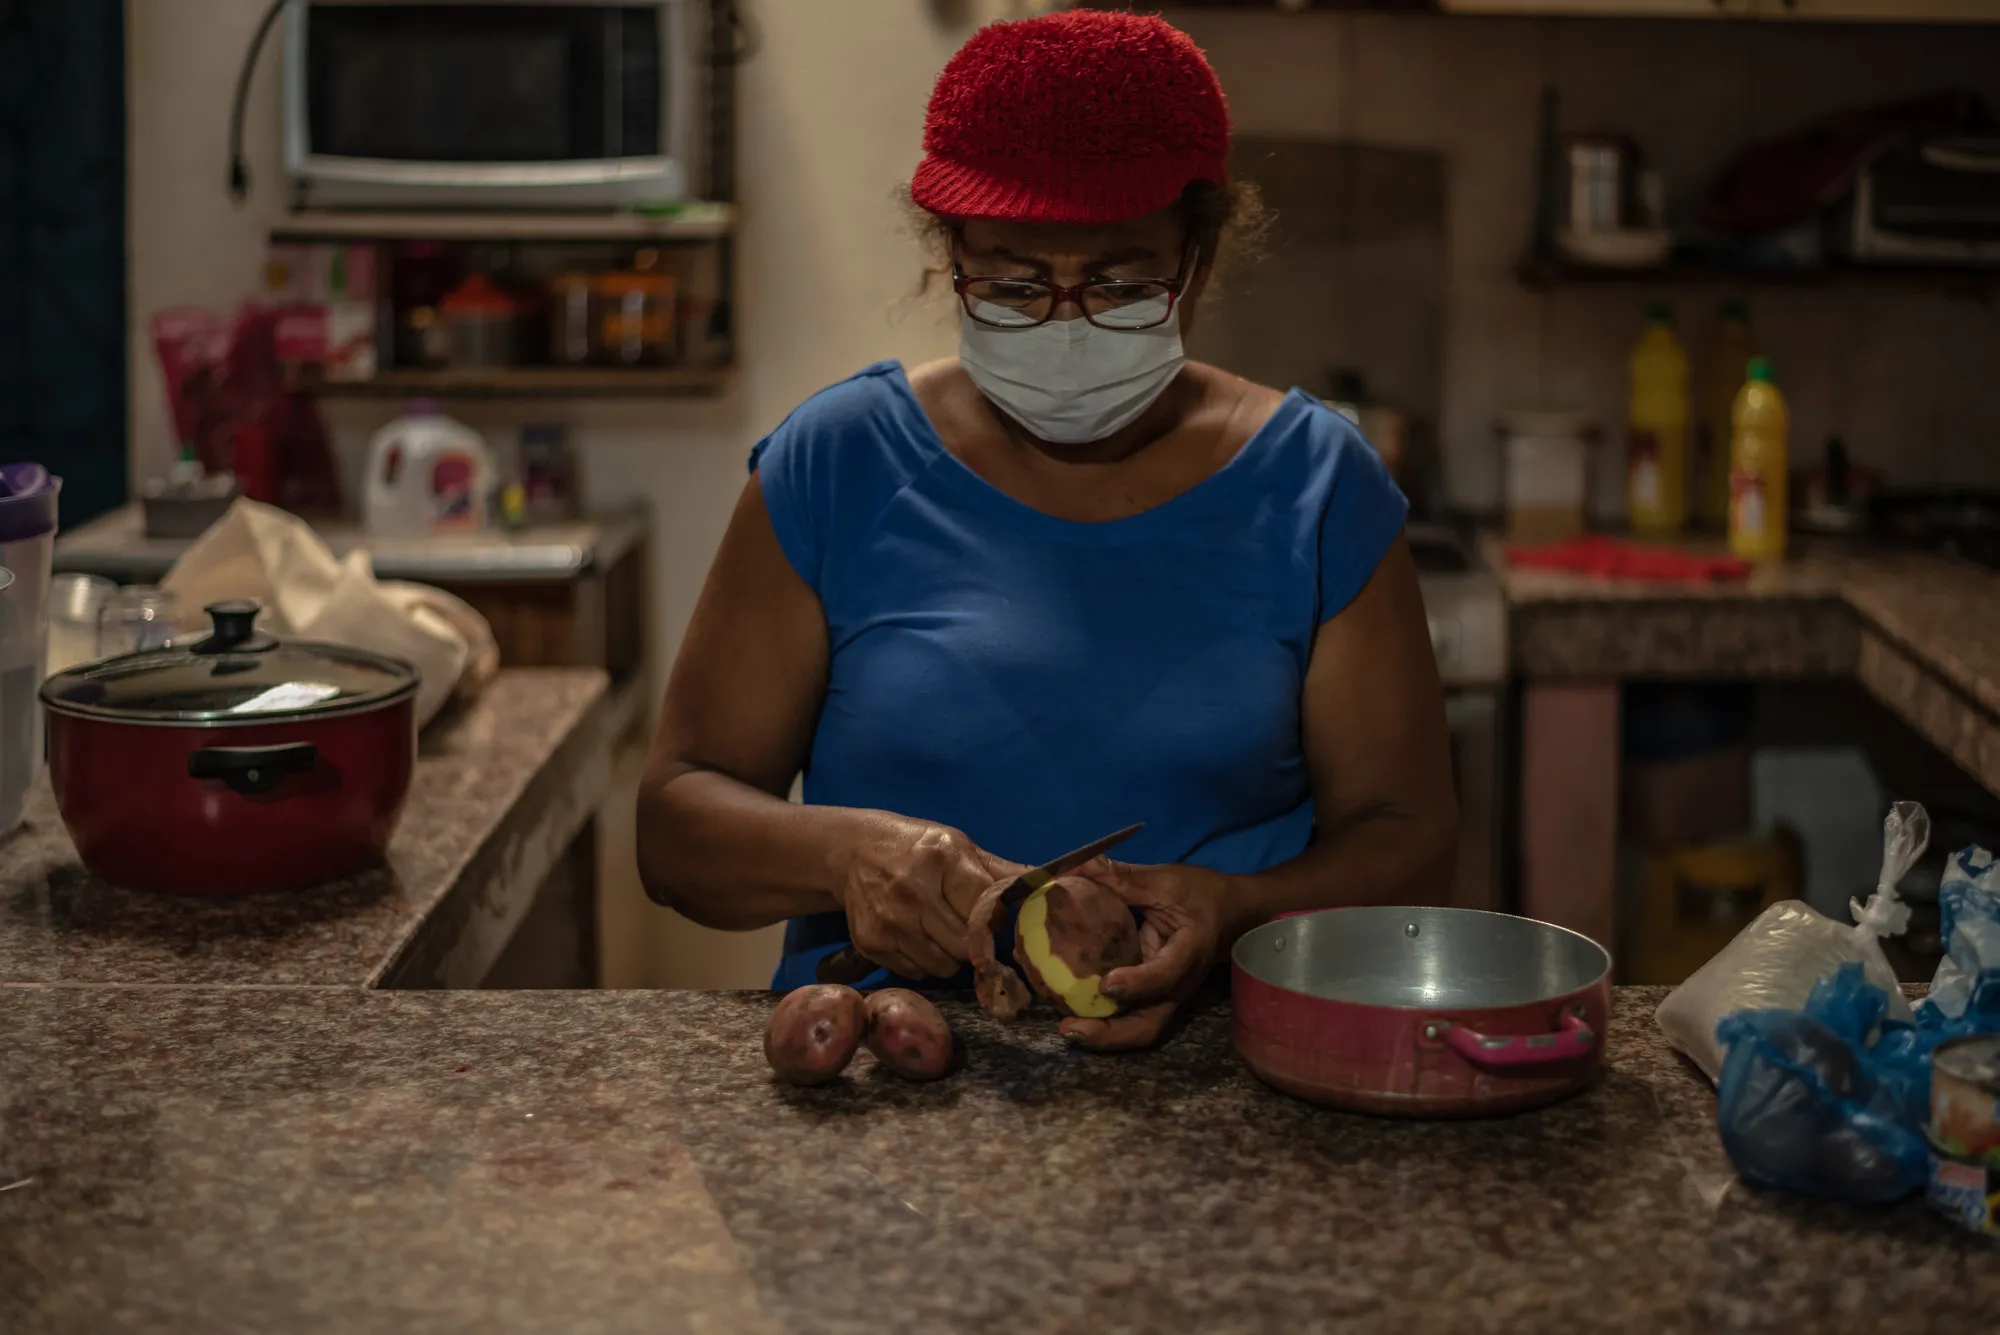 Une femme dans un masque facial épluche une pomme de terre dans une cuisine.